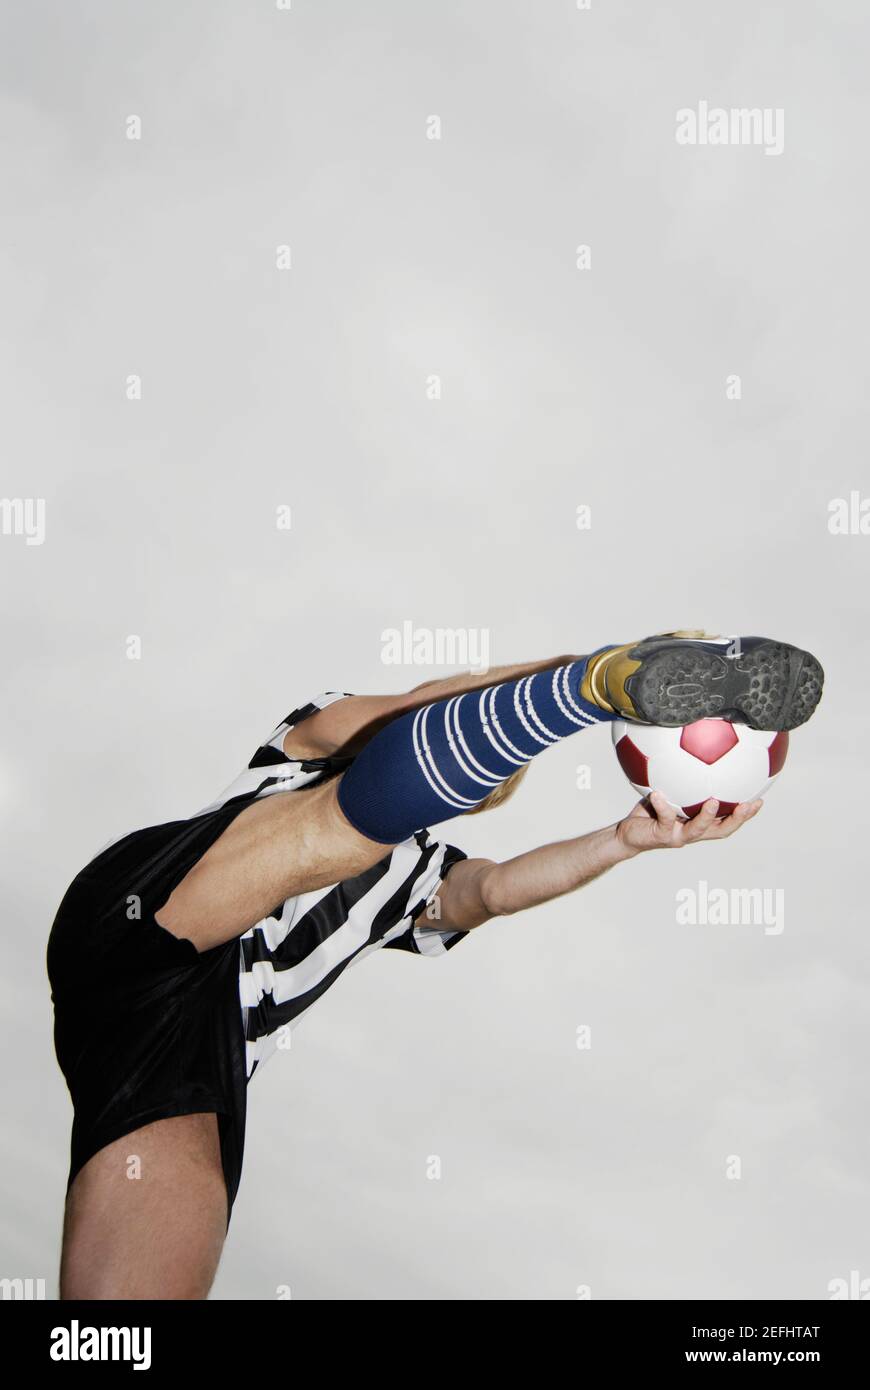 Low angle view of a soccer player botter un ballon de soccer Banque D'Images